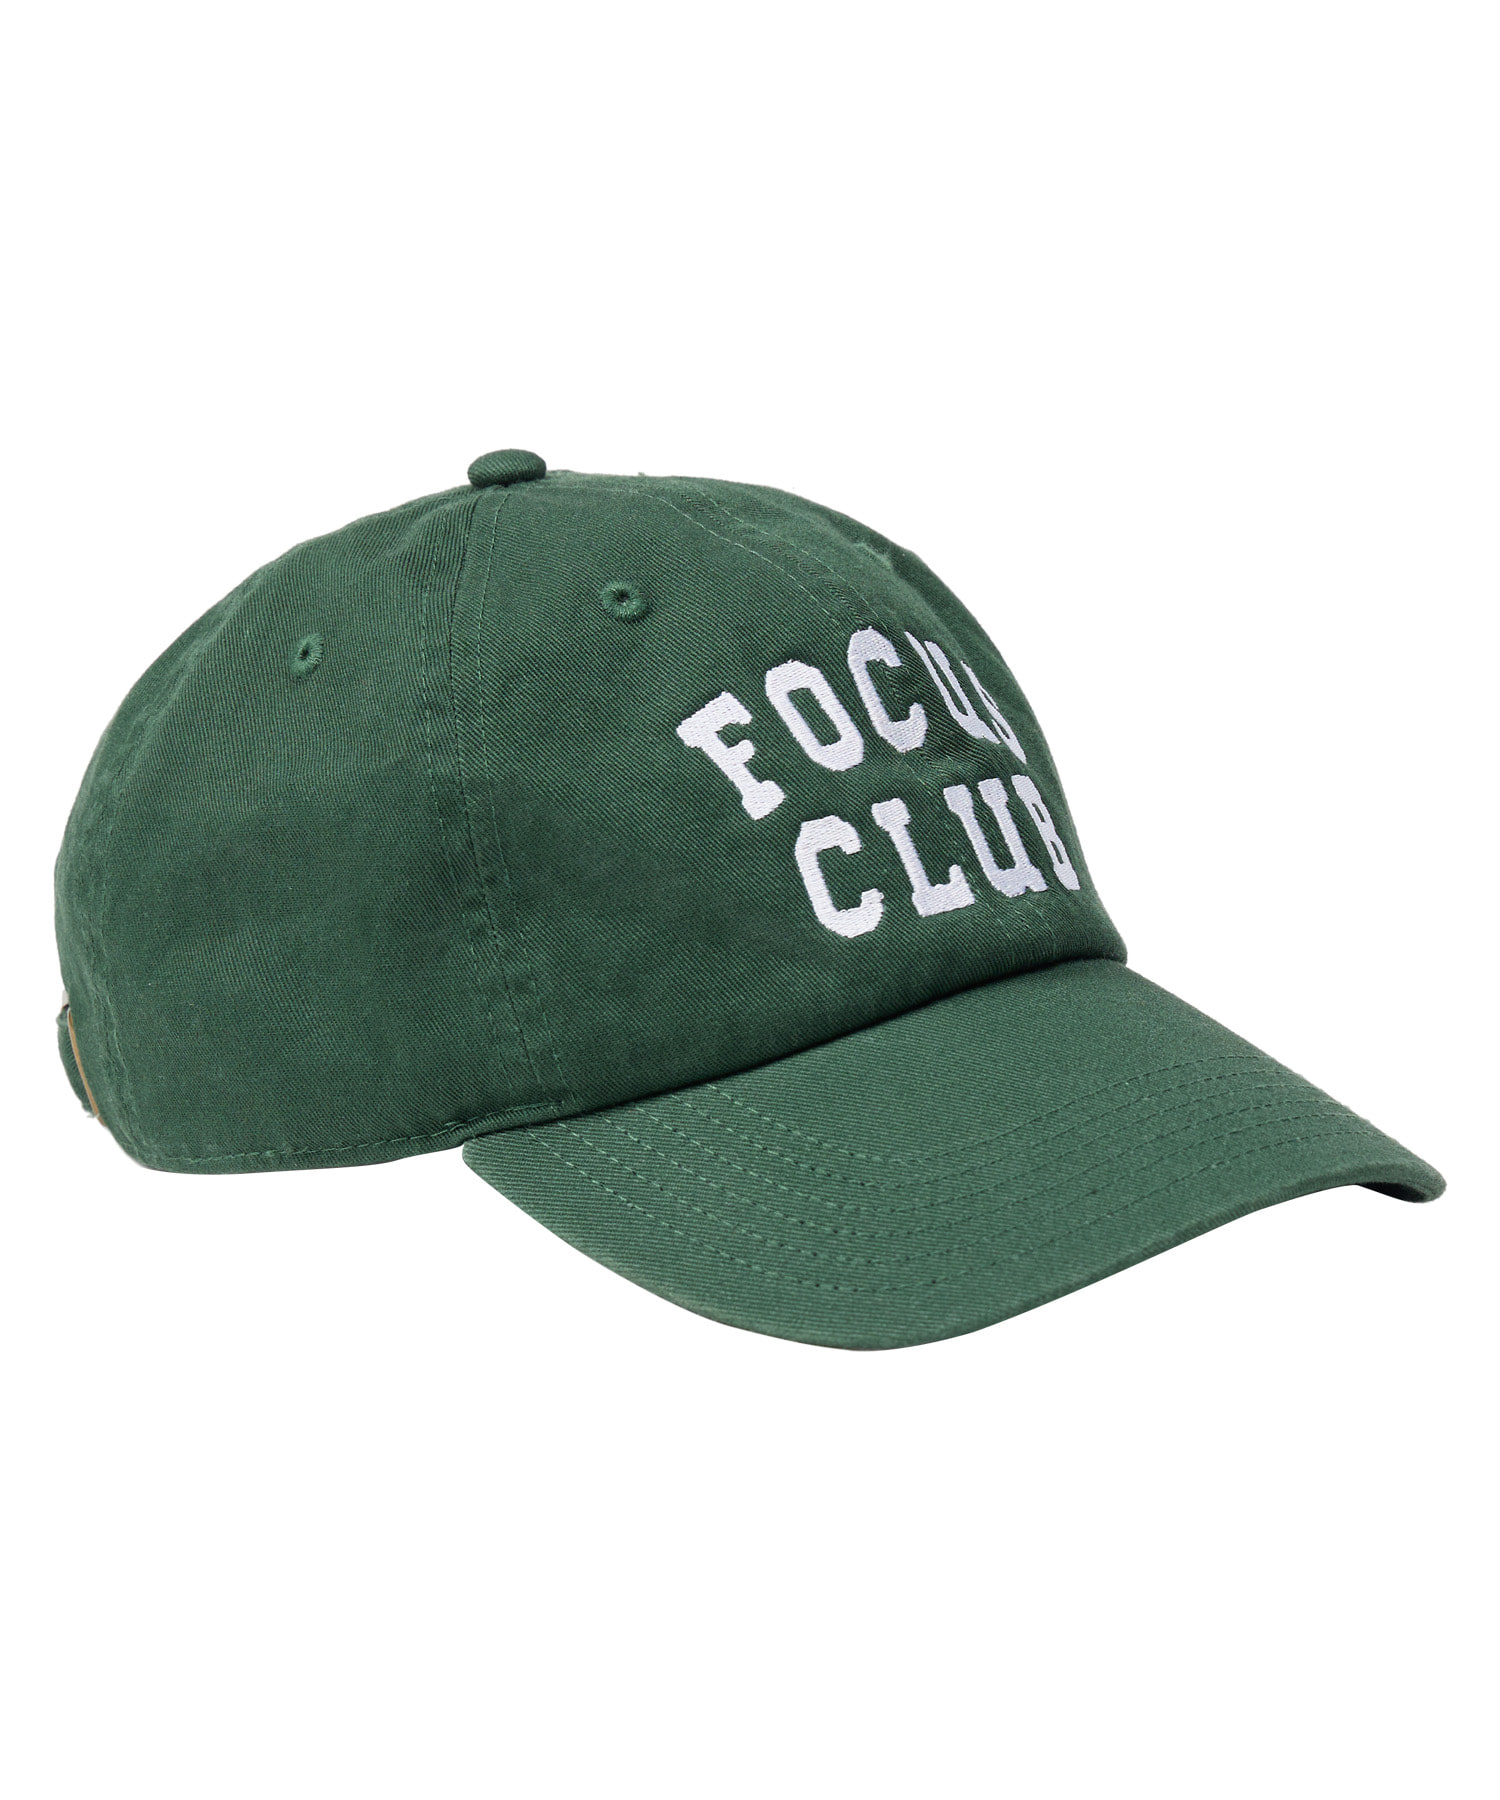 라이프 아카이브 FOCUS CLUB BALL CAP_GREEN 라이프,LIFE, LIFE ARCHIVE,볼캡,라이프볼캡,ballcap